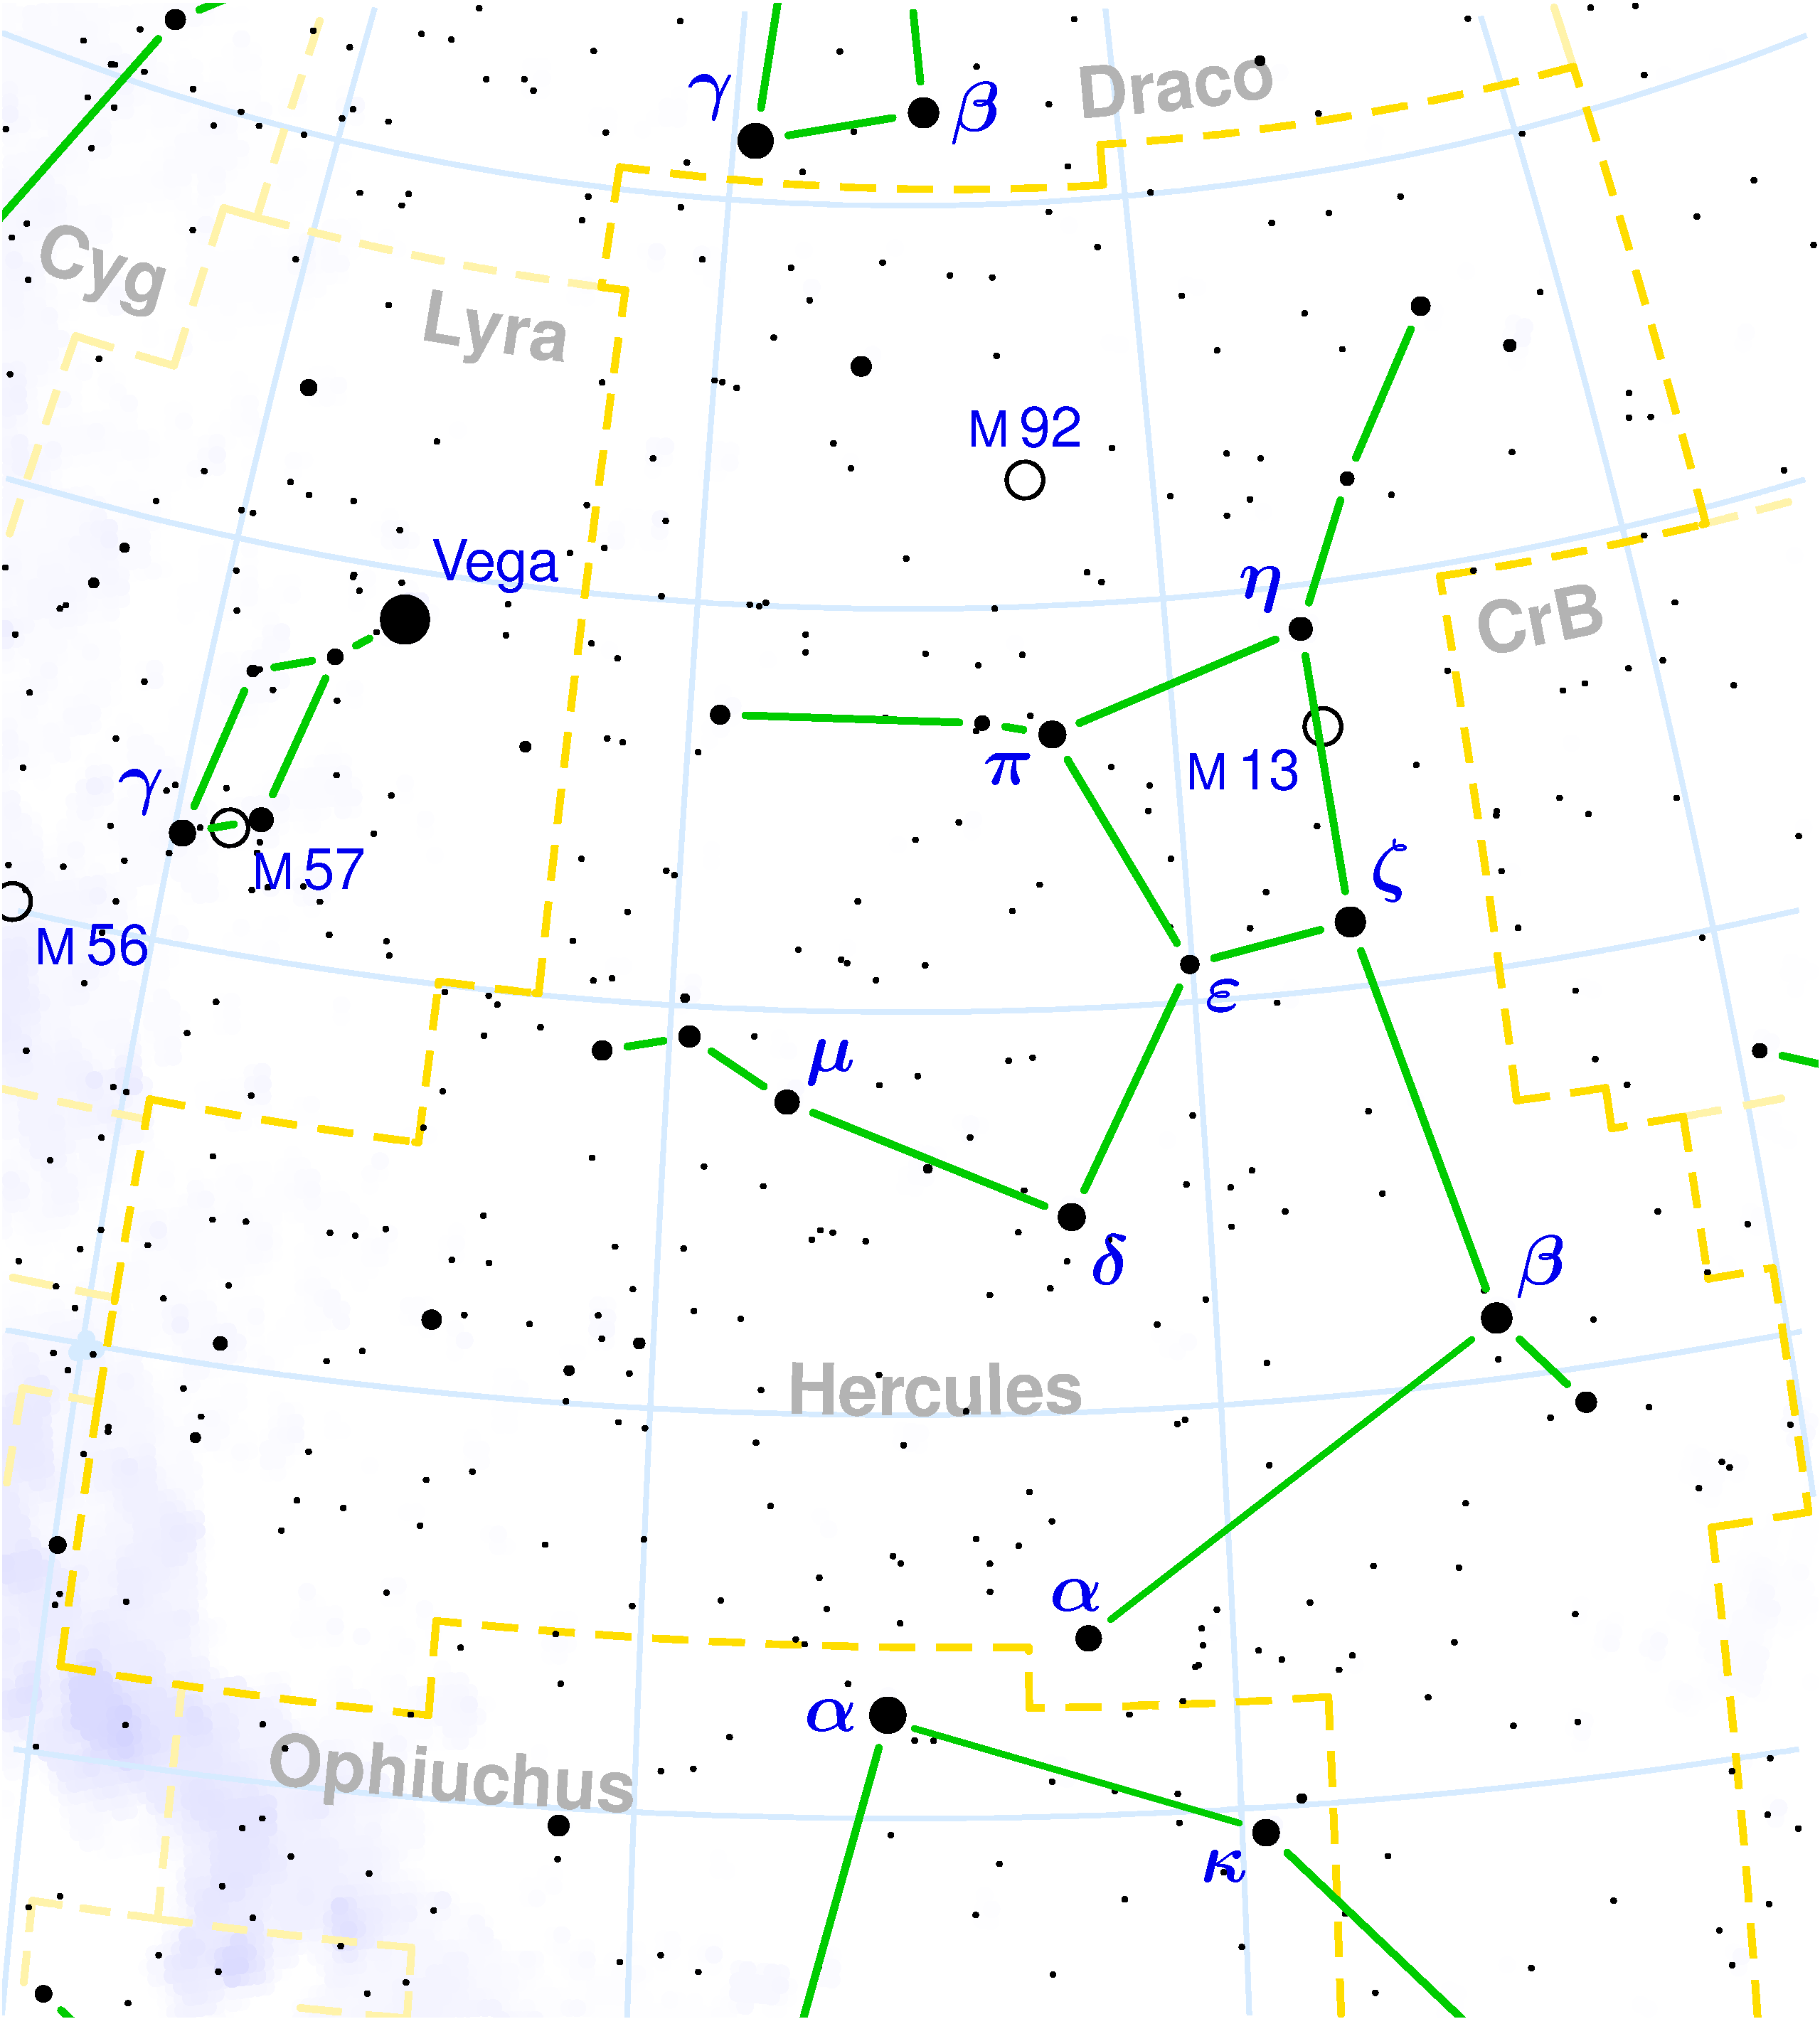 Hercules_constellation_map_c_2003_torsten_bronger